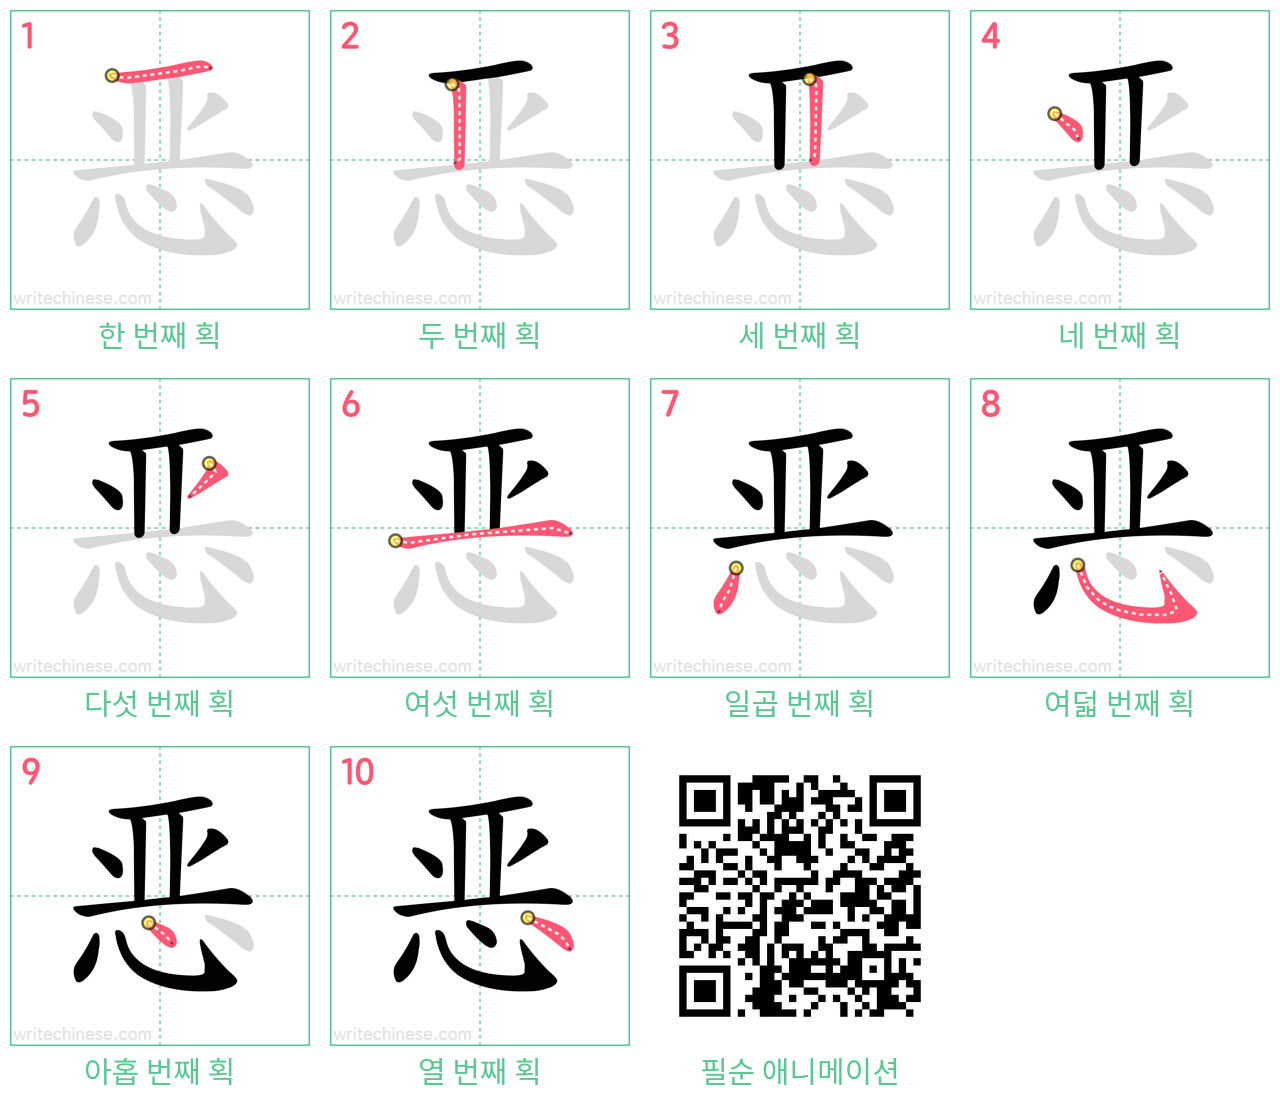 恶 step-by-step stroke order diagrams